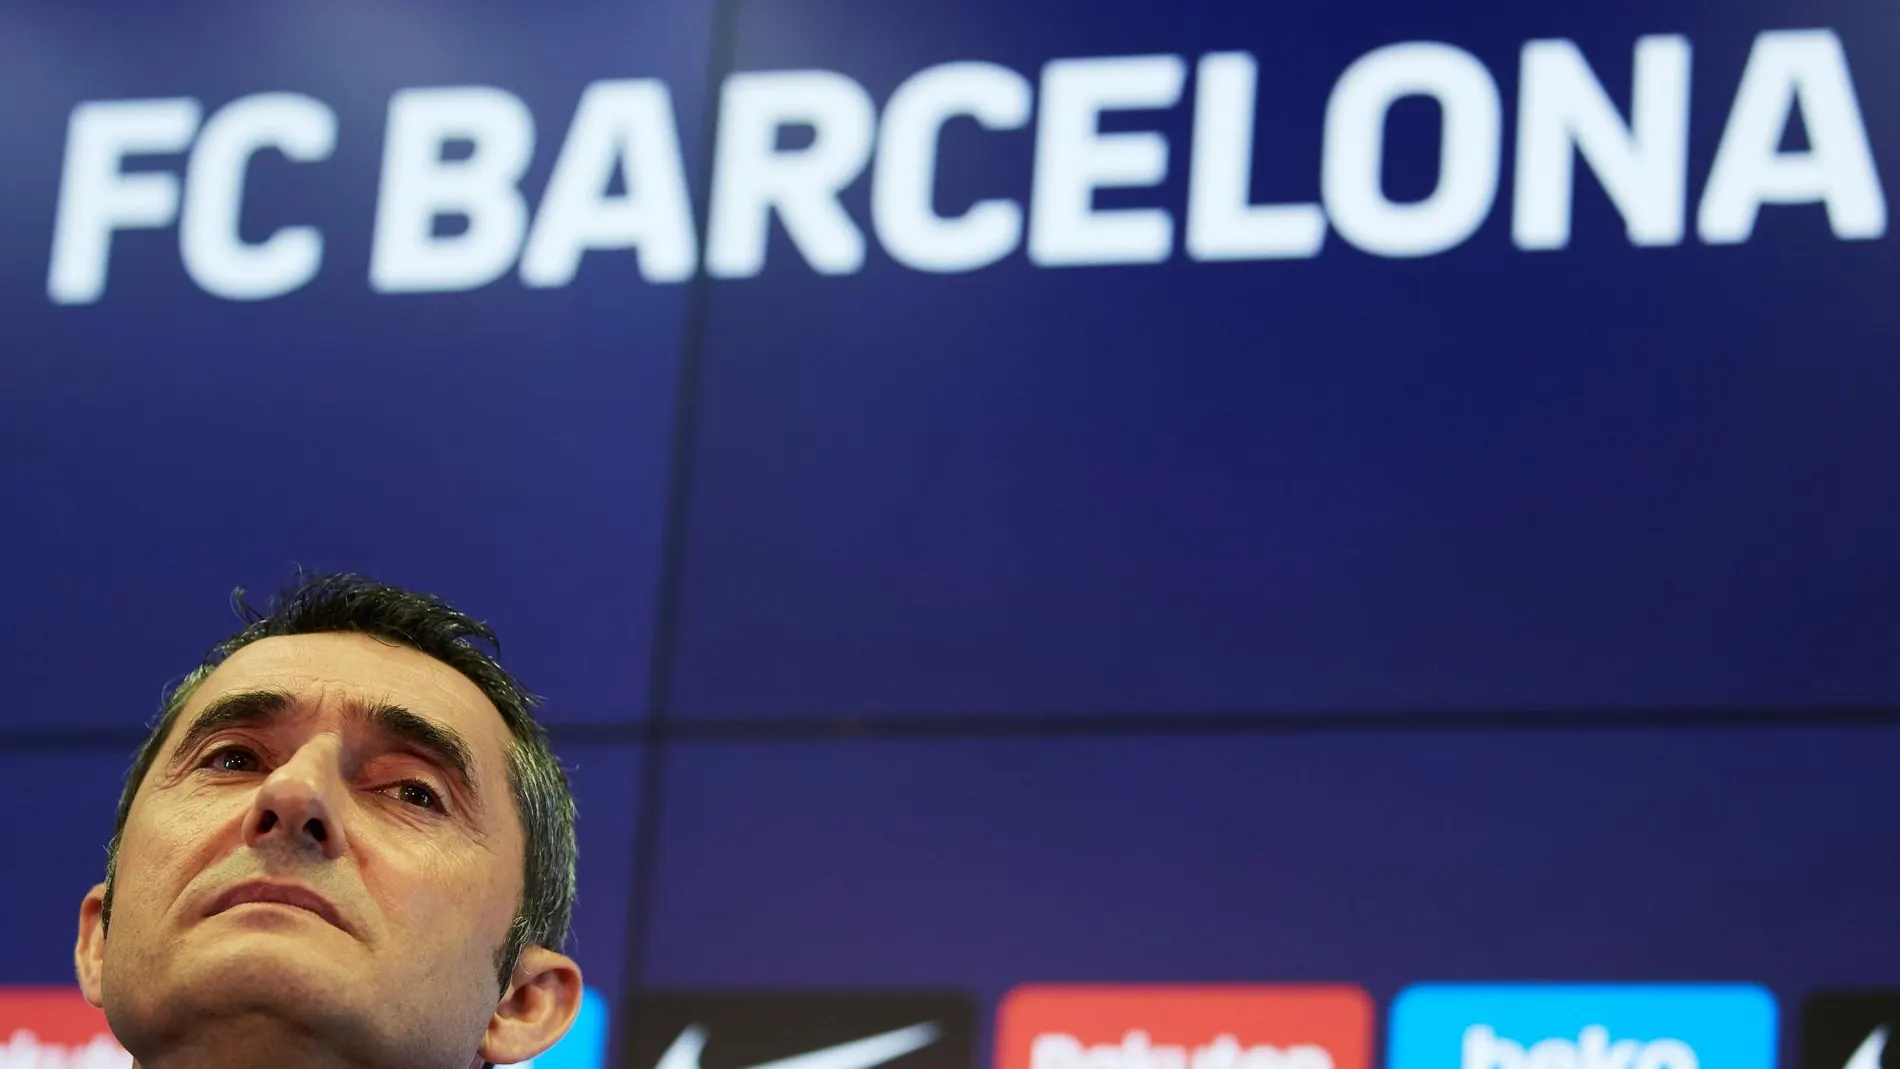 Las claves de las crisis del Barcelona de Valverde